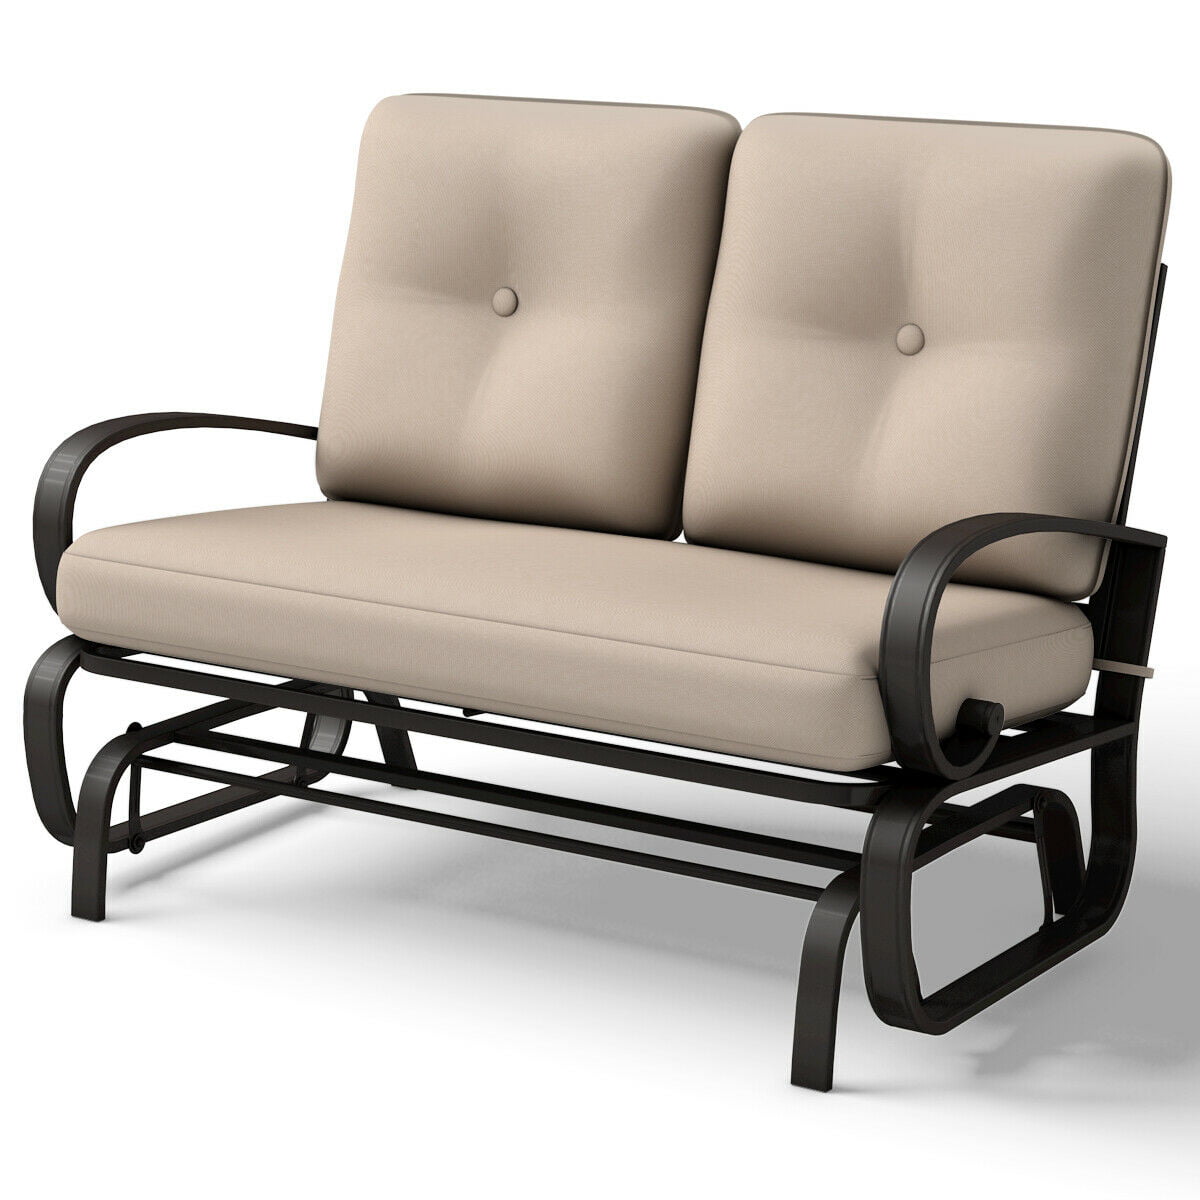 Glider Outdoor Patio Rocking Bench, Outdoor Furniture Glider Sofa